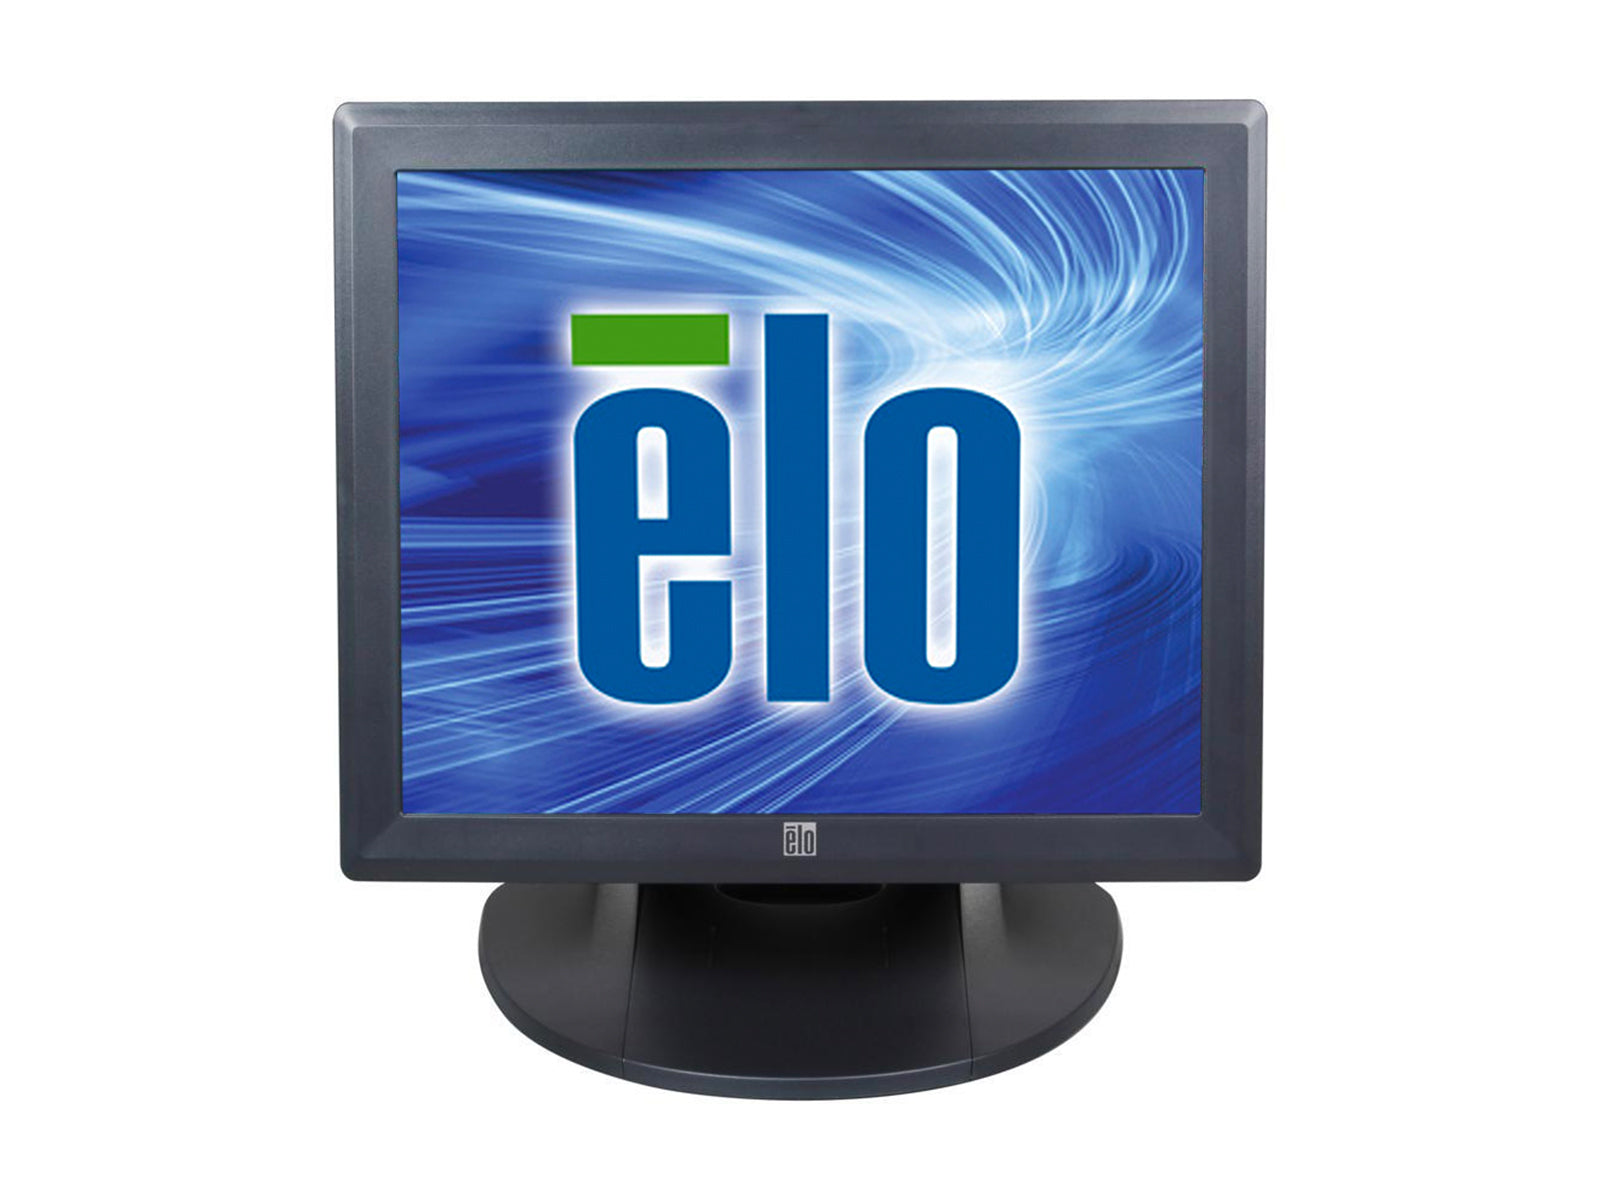 Monitor LED Elo 1729L con pantalla táctil de 17" 1280 x 1024 (E261247) Monitors.com